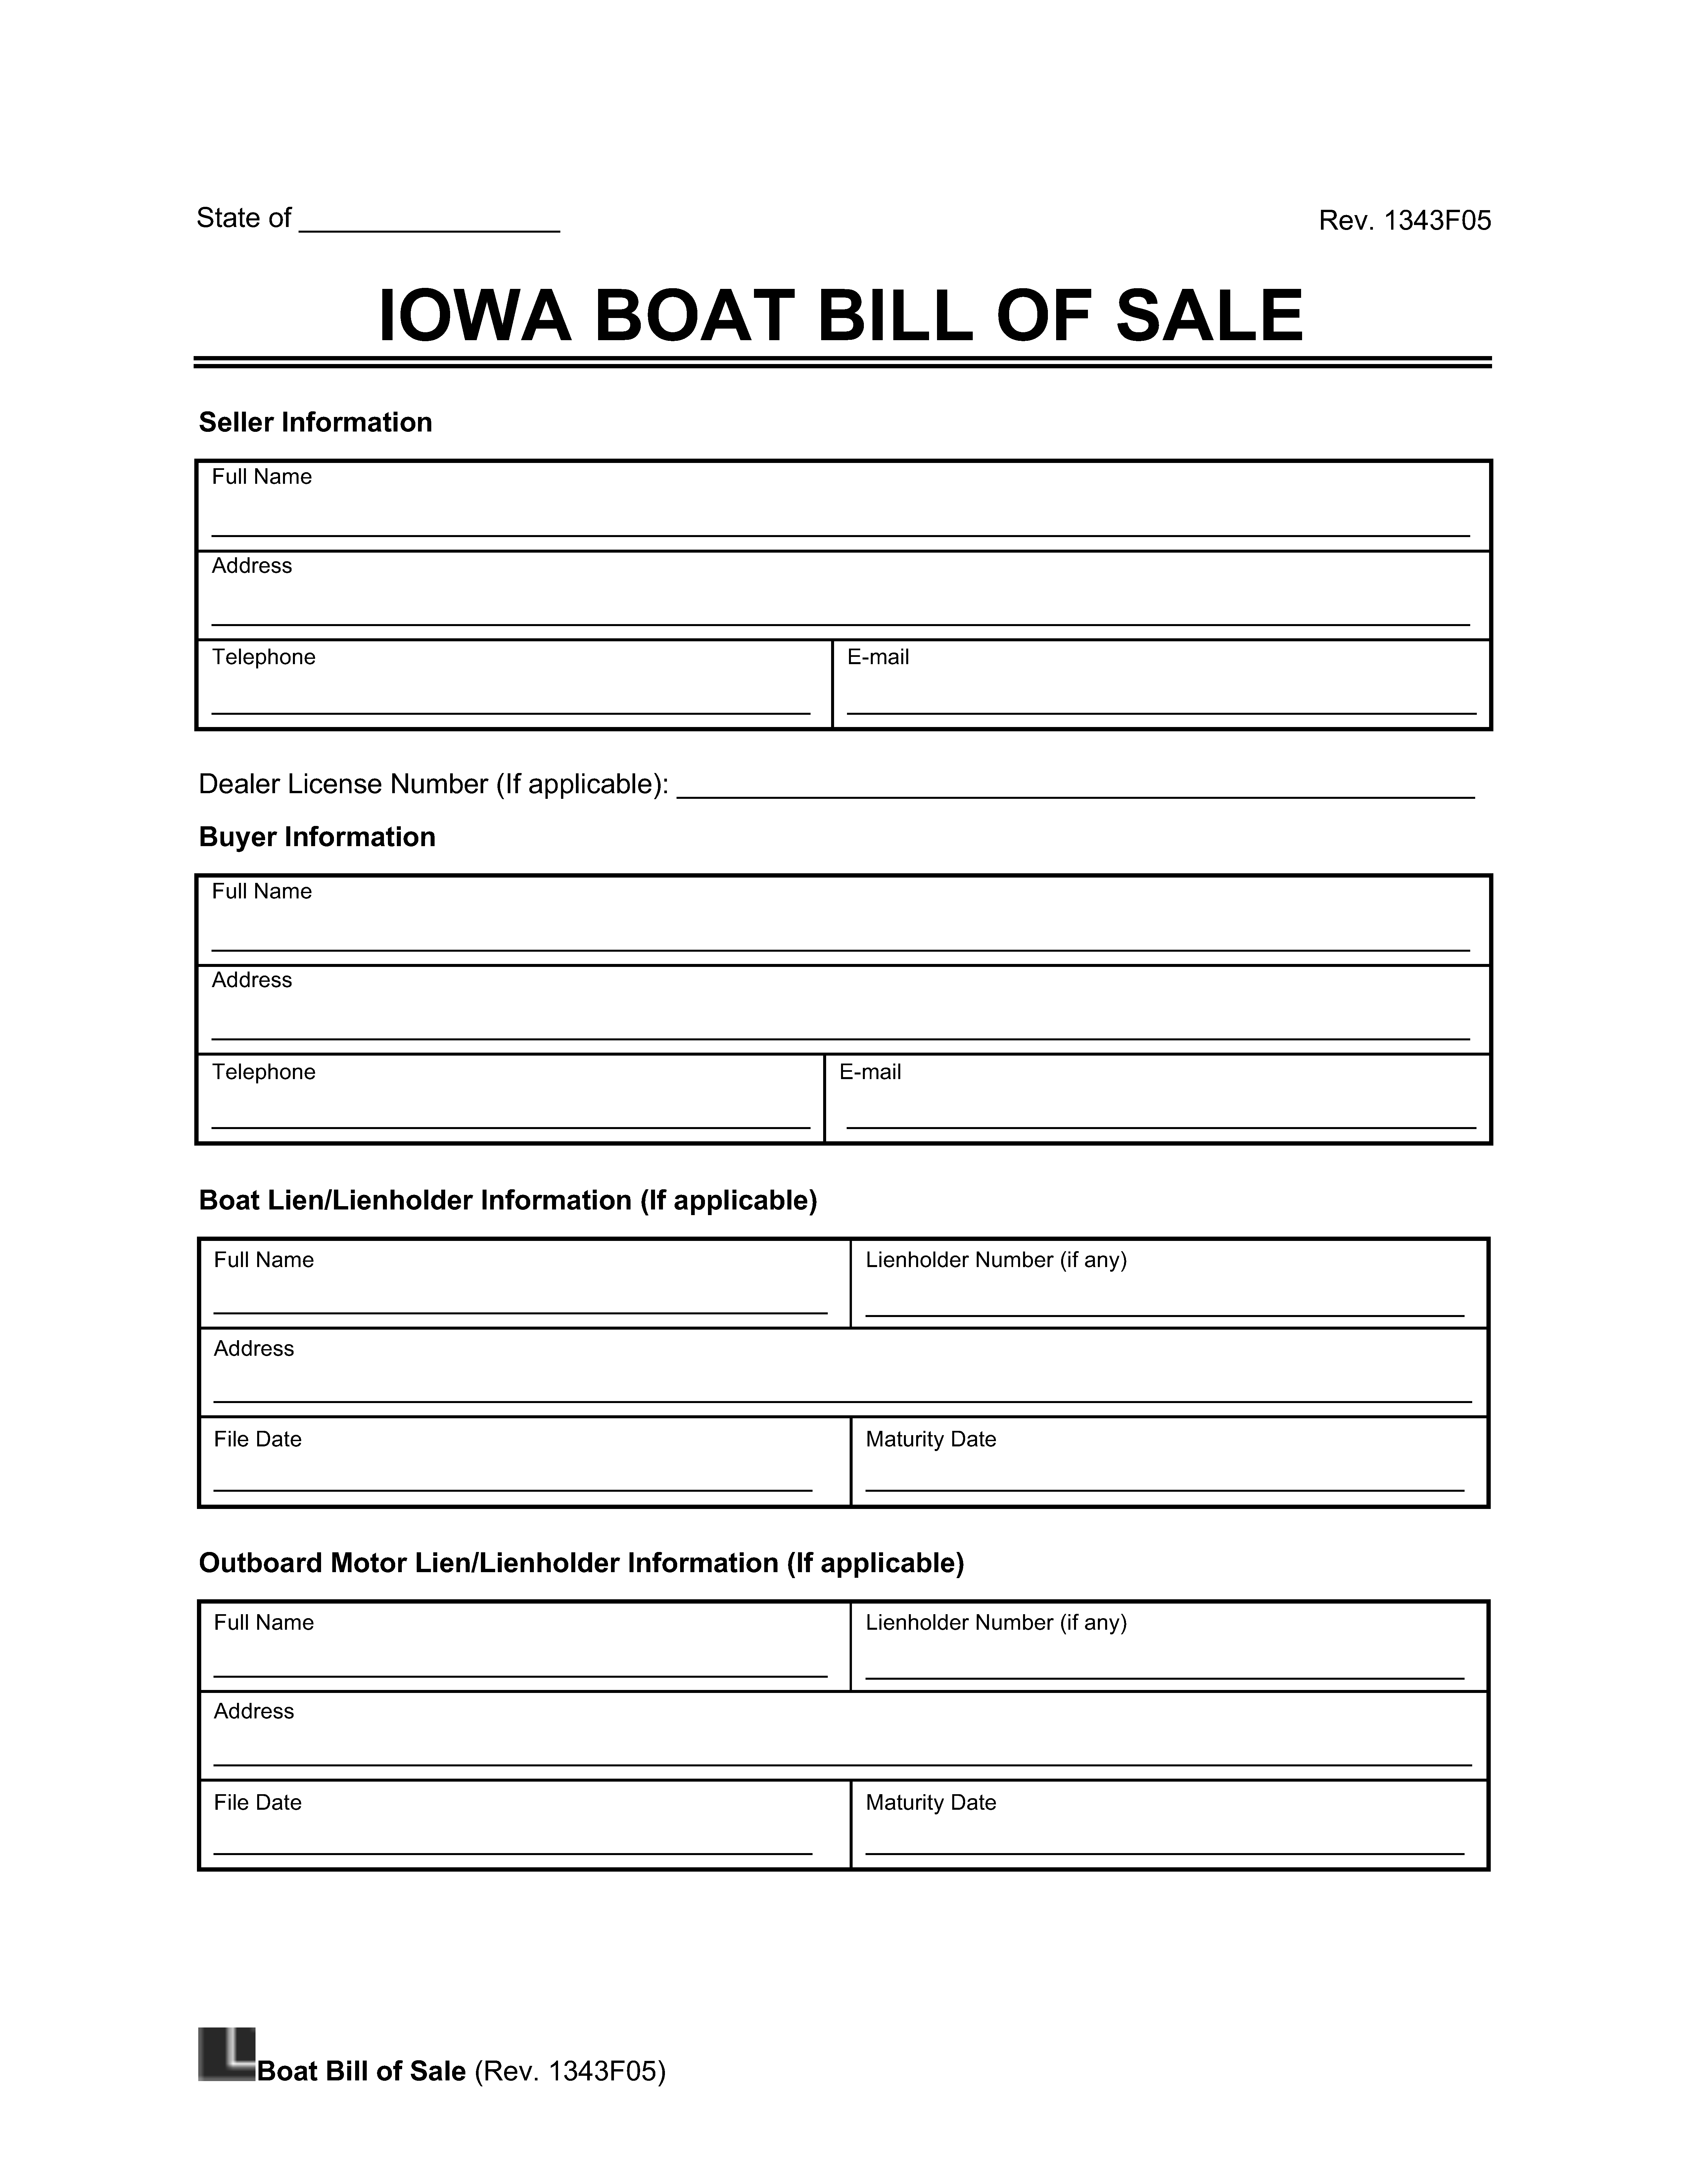 Boat Bill of Sale Iowa screenshot